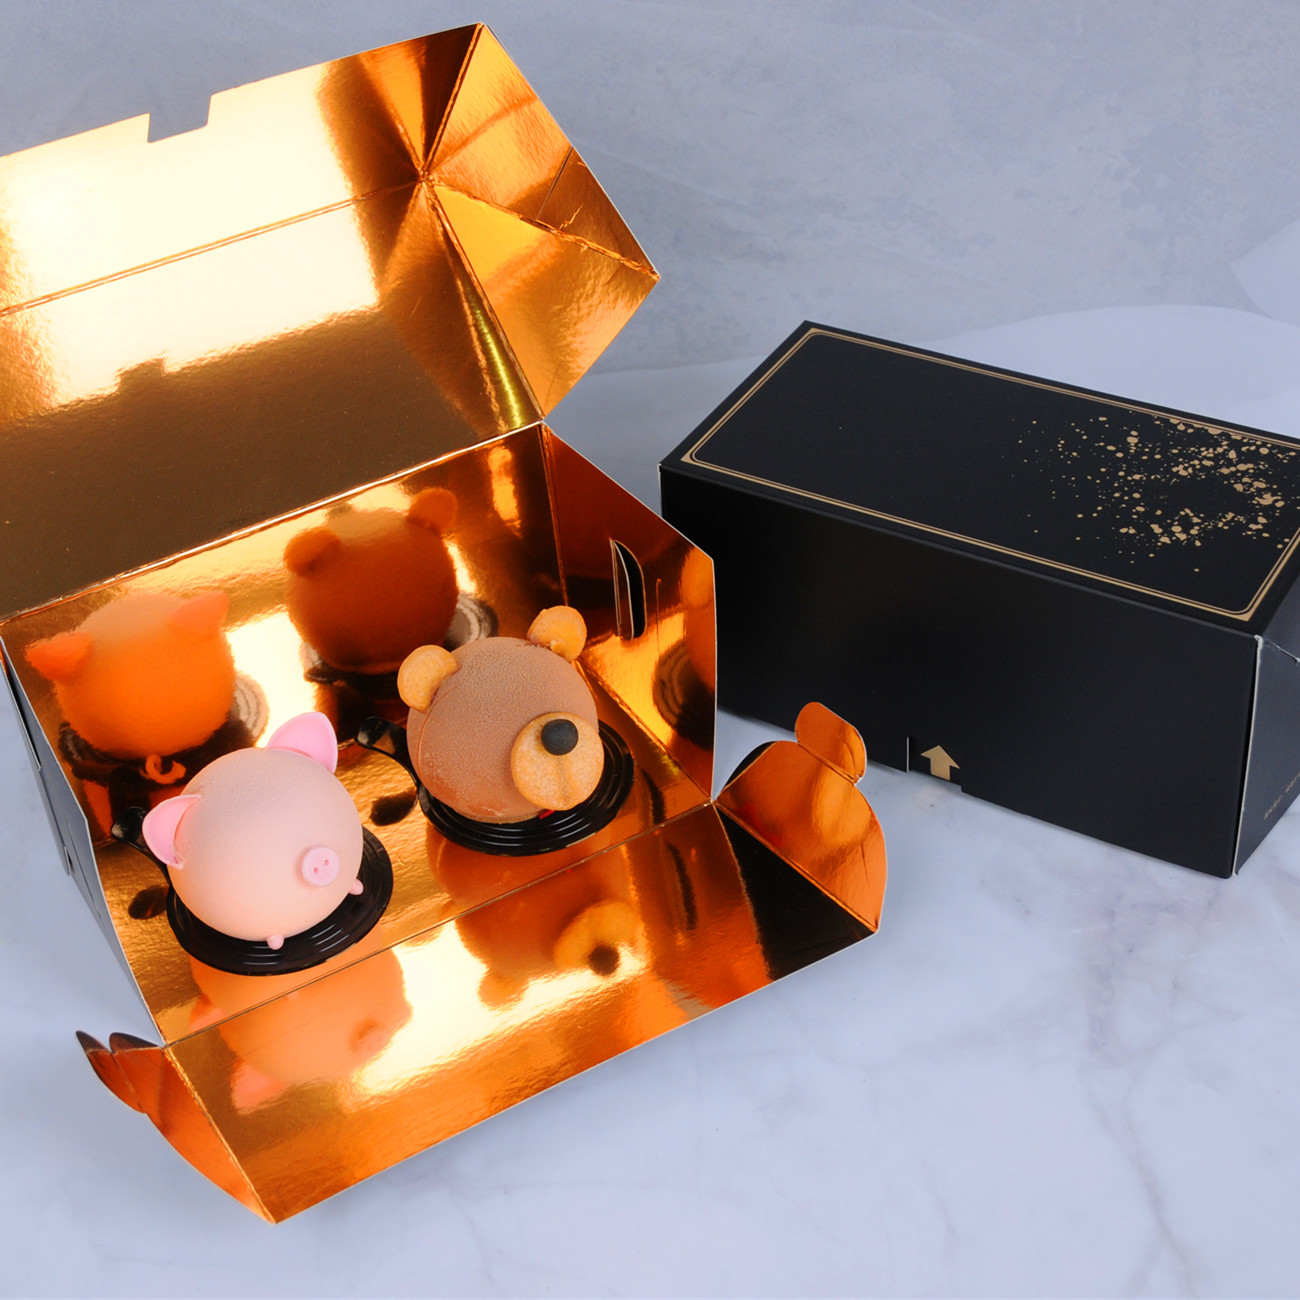 甜品打包盒 抱抱卷盒高端慕斯西点蛋糕盒内外设计独具吸引 ins法式